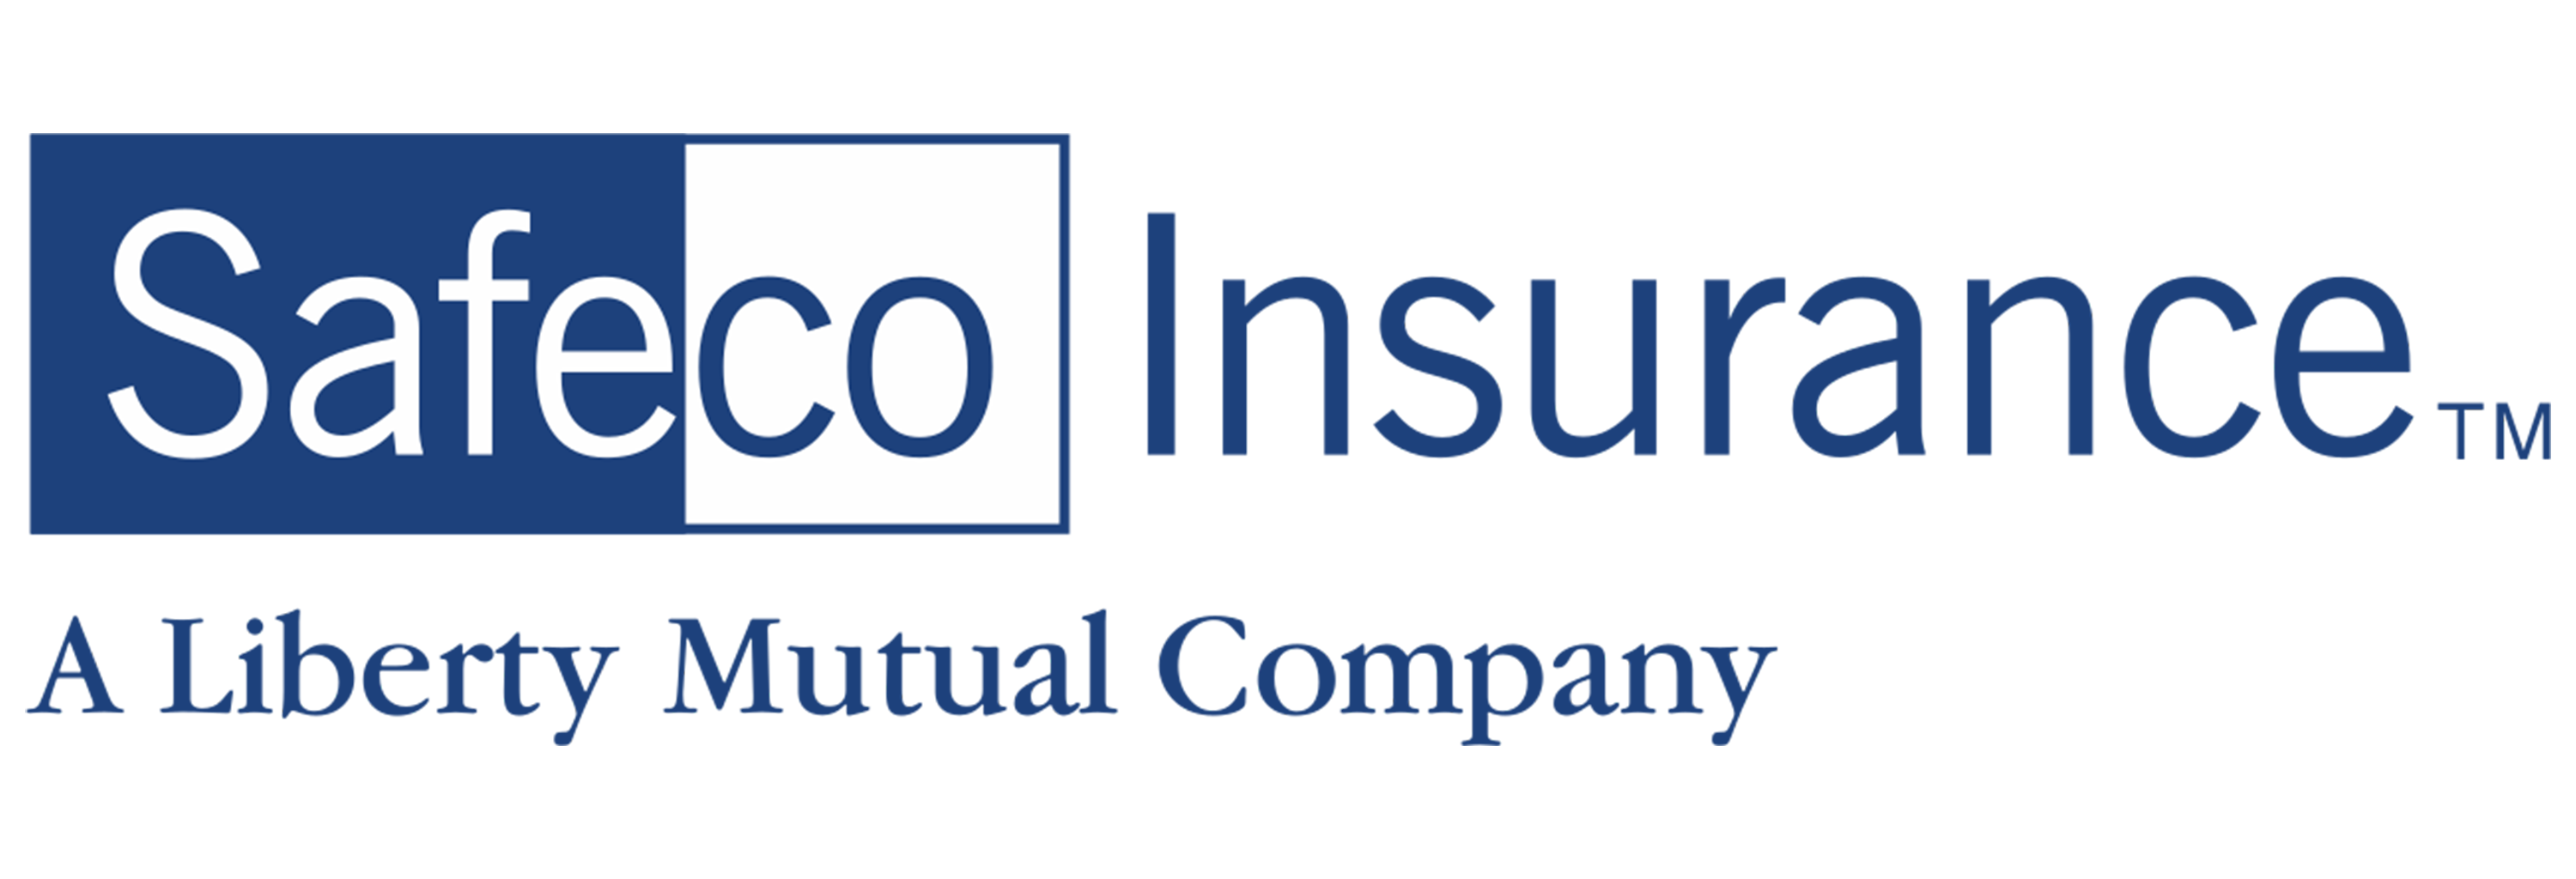 SafeCo Insurance A Liberty Mutual Company